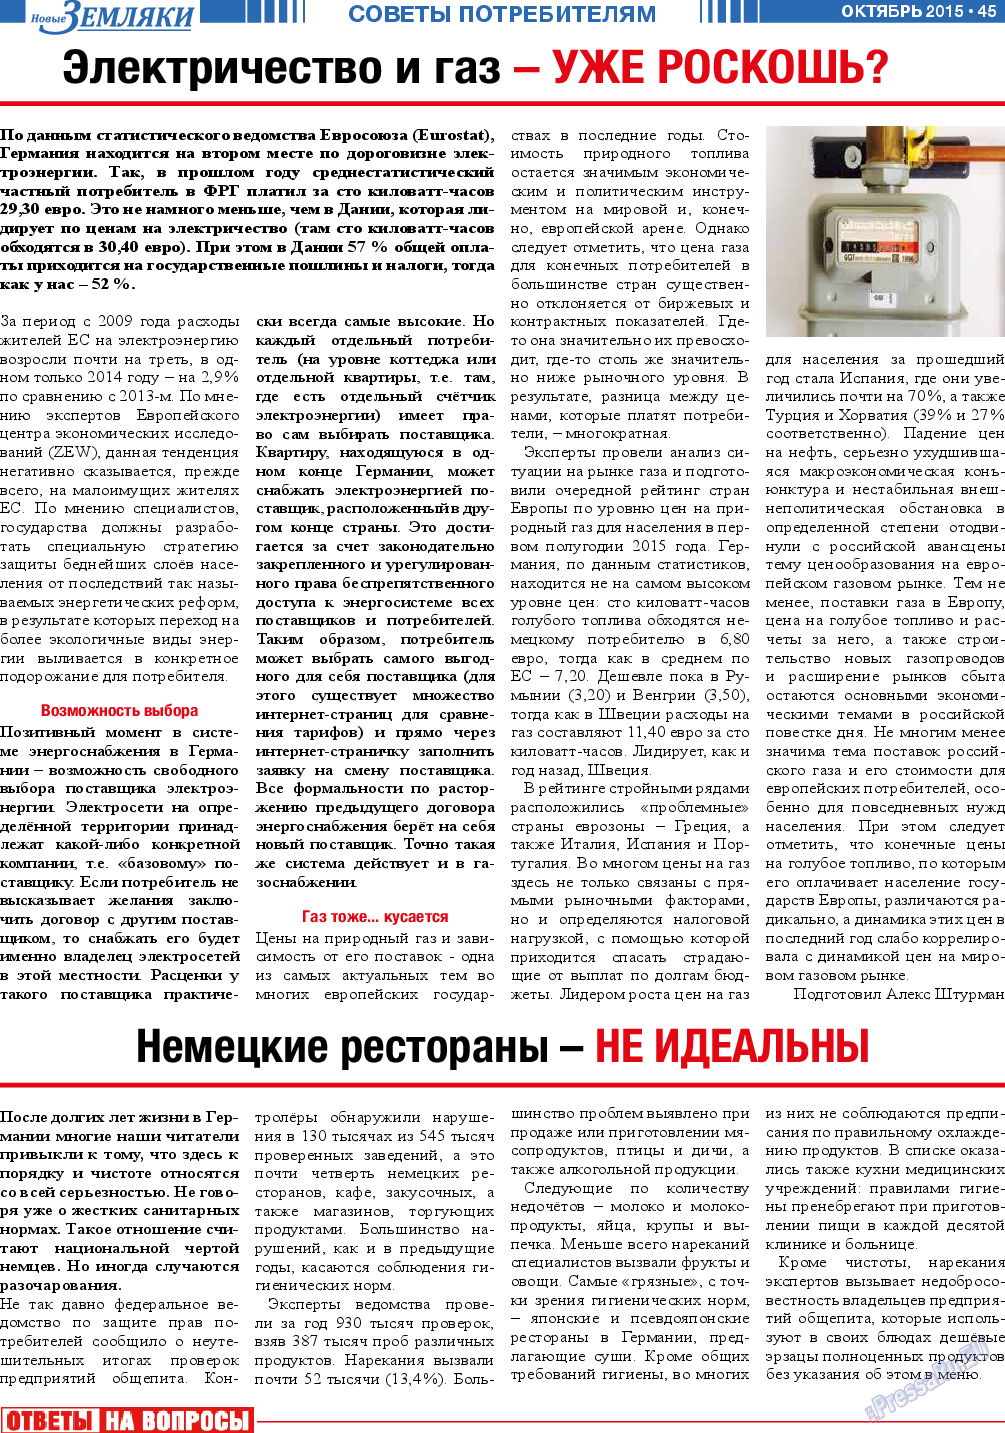 Новые Земляки, газета. 2015 №10 стр.45